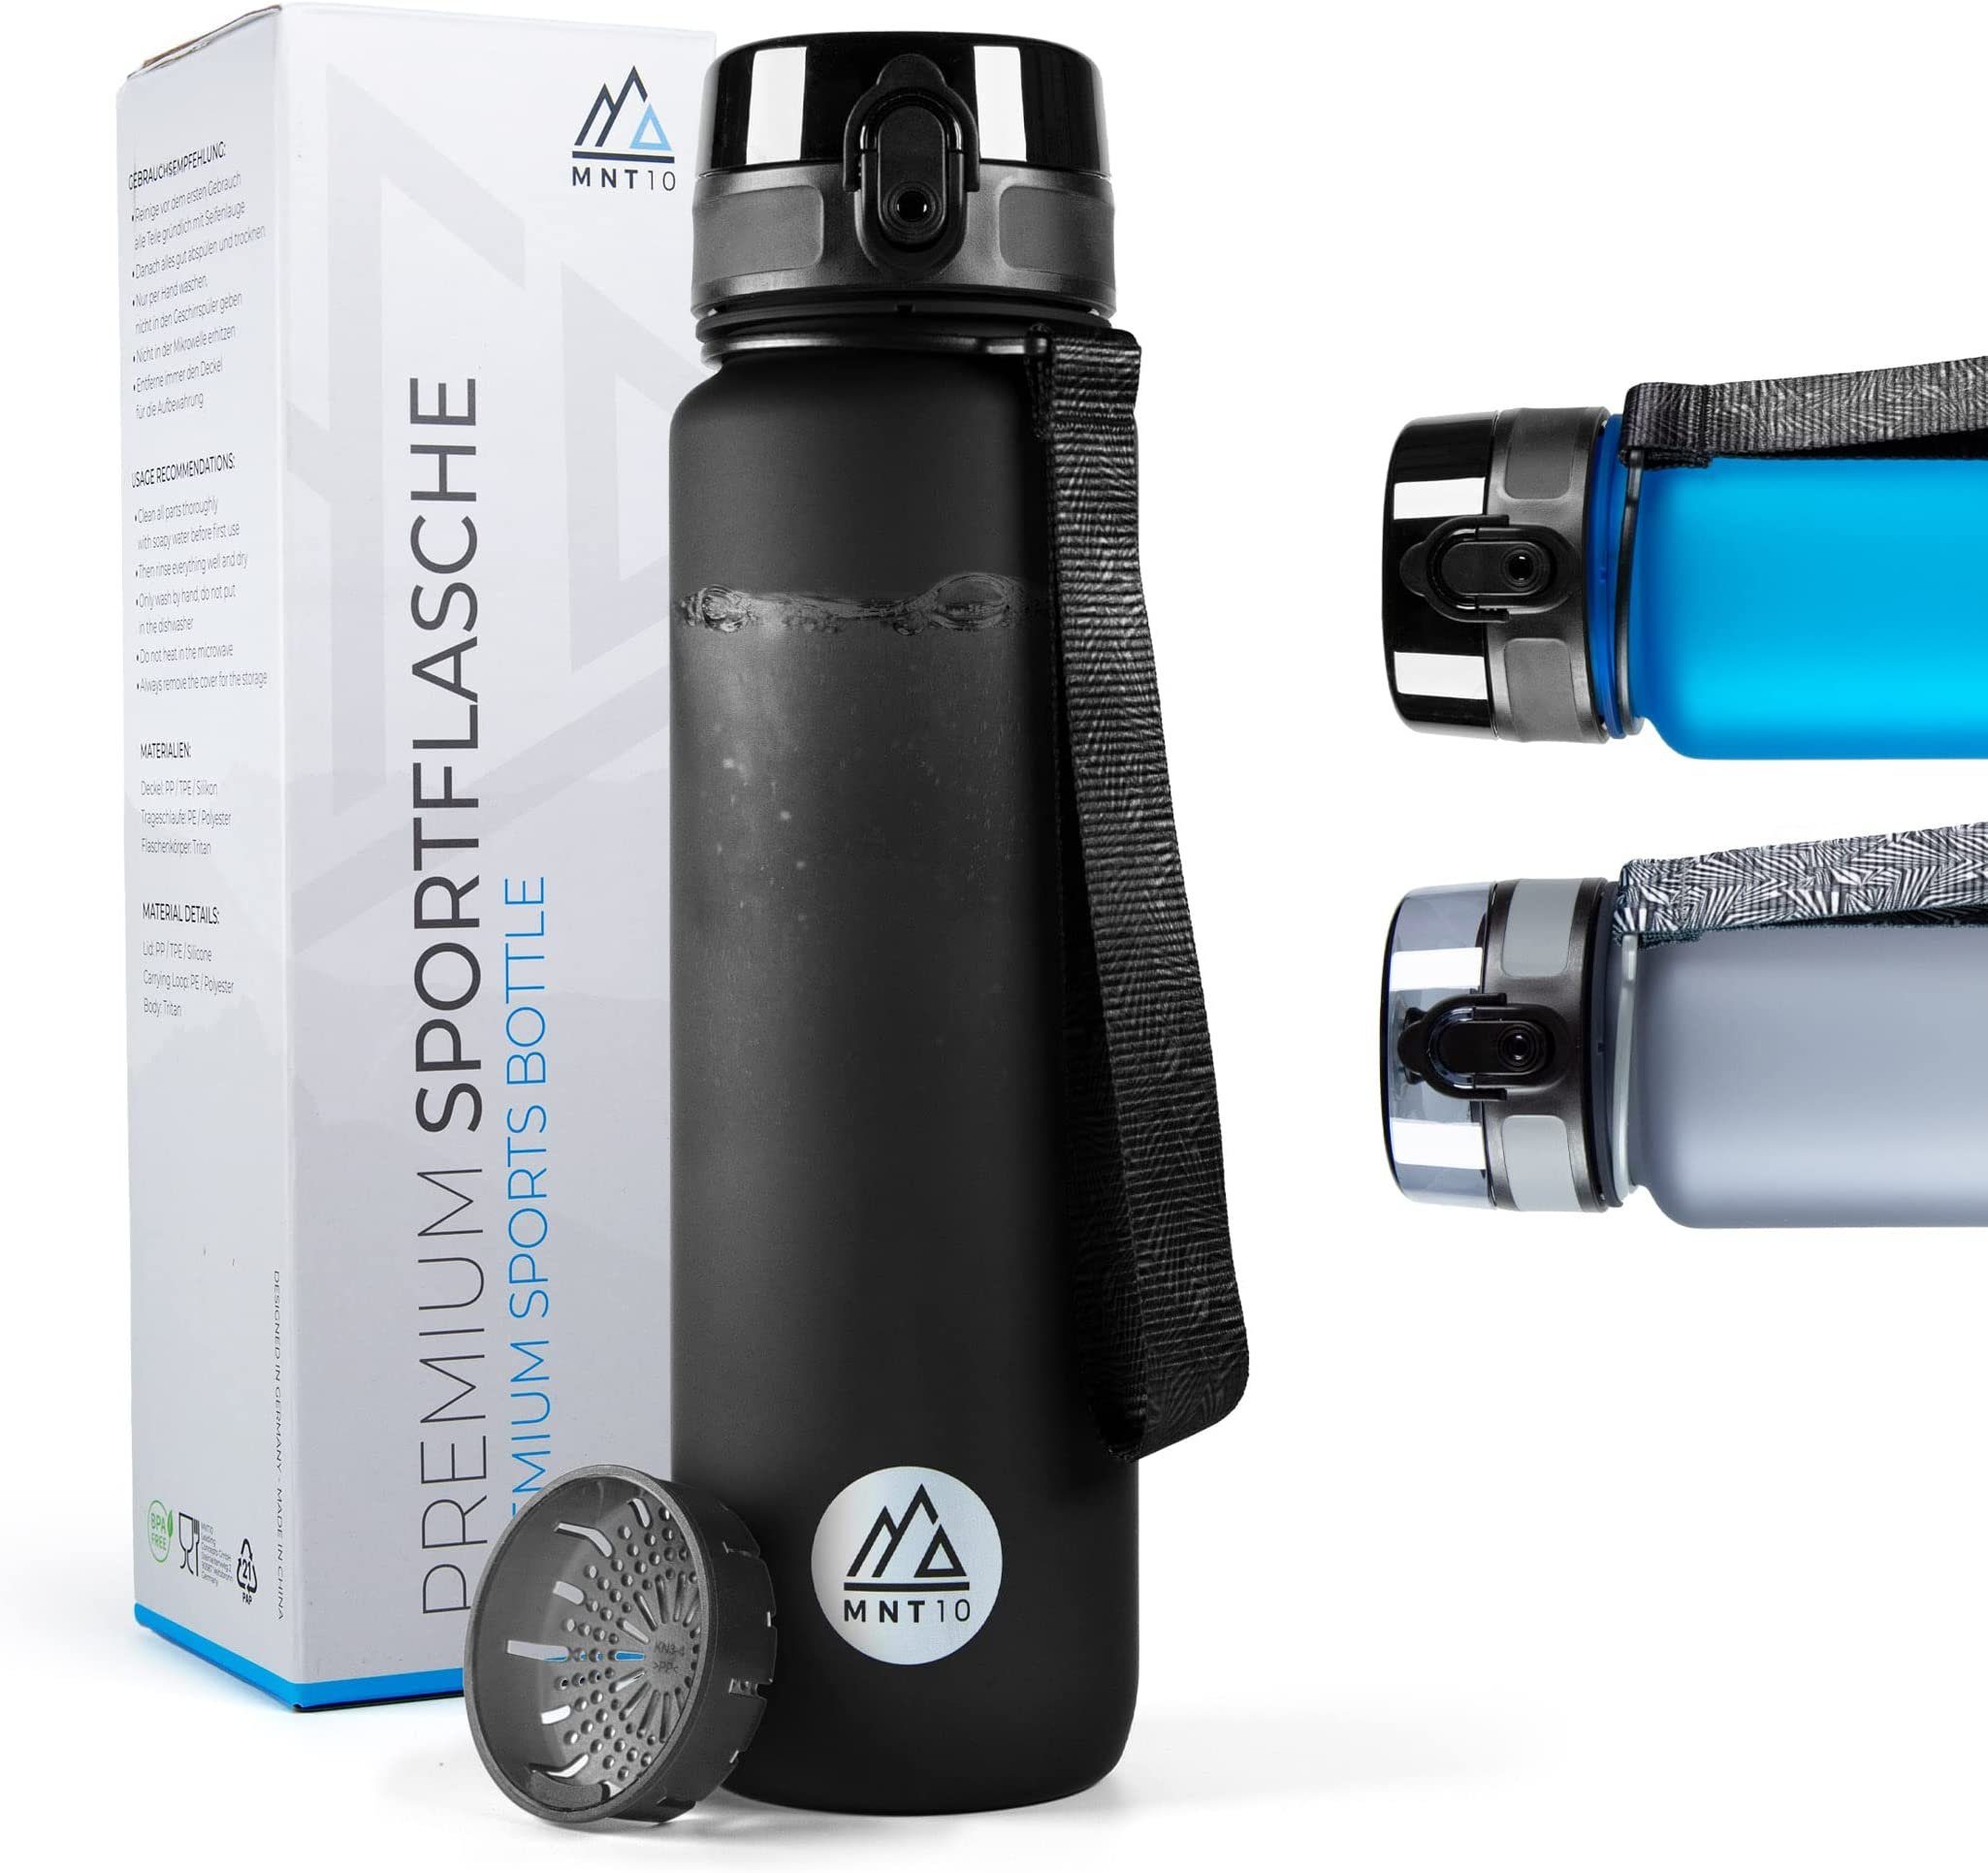 coolrhino Trinkflasche 1,5L Wasserflasche Sportflasche Flasche Sport BPA  frei